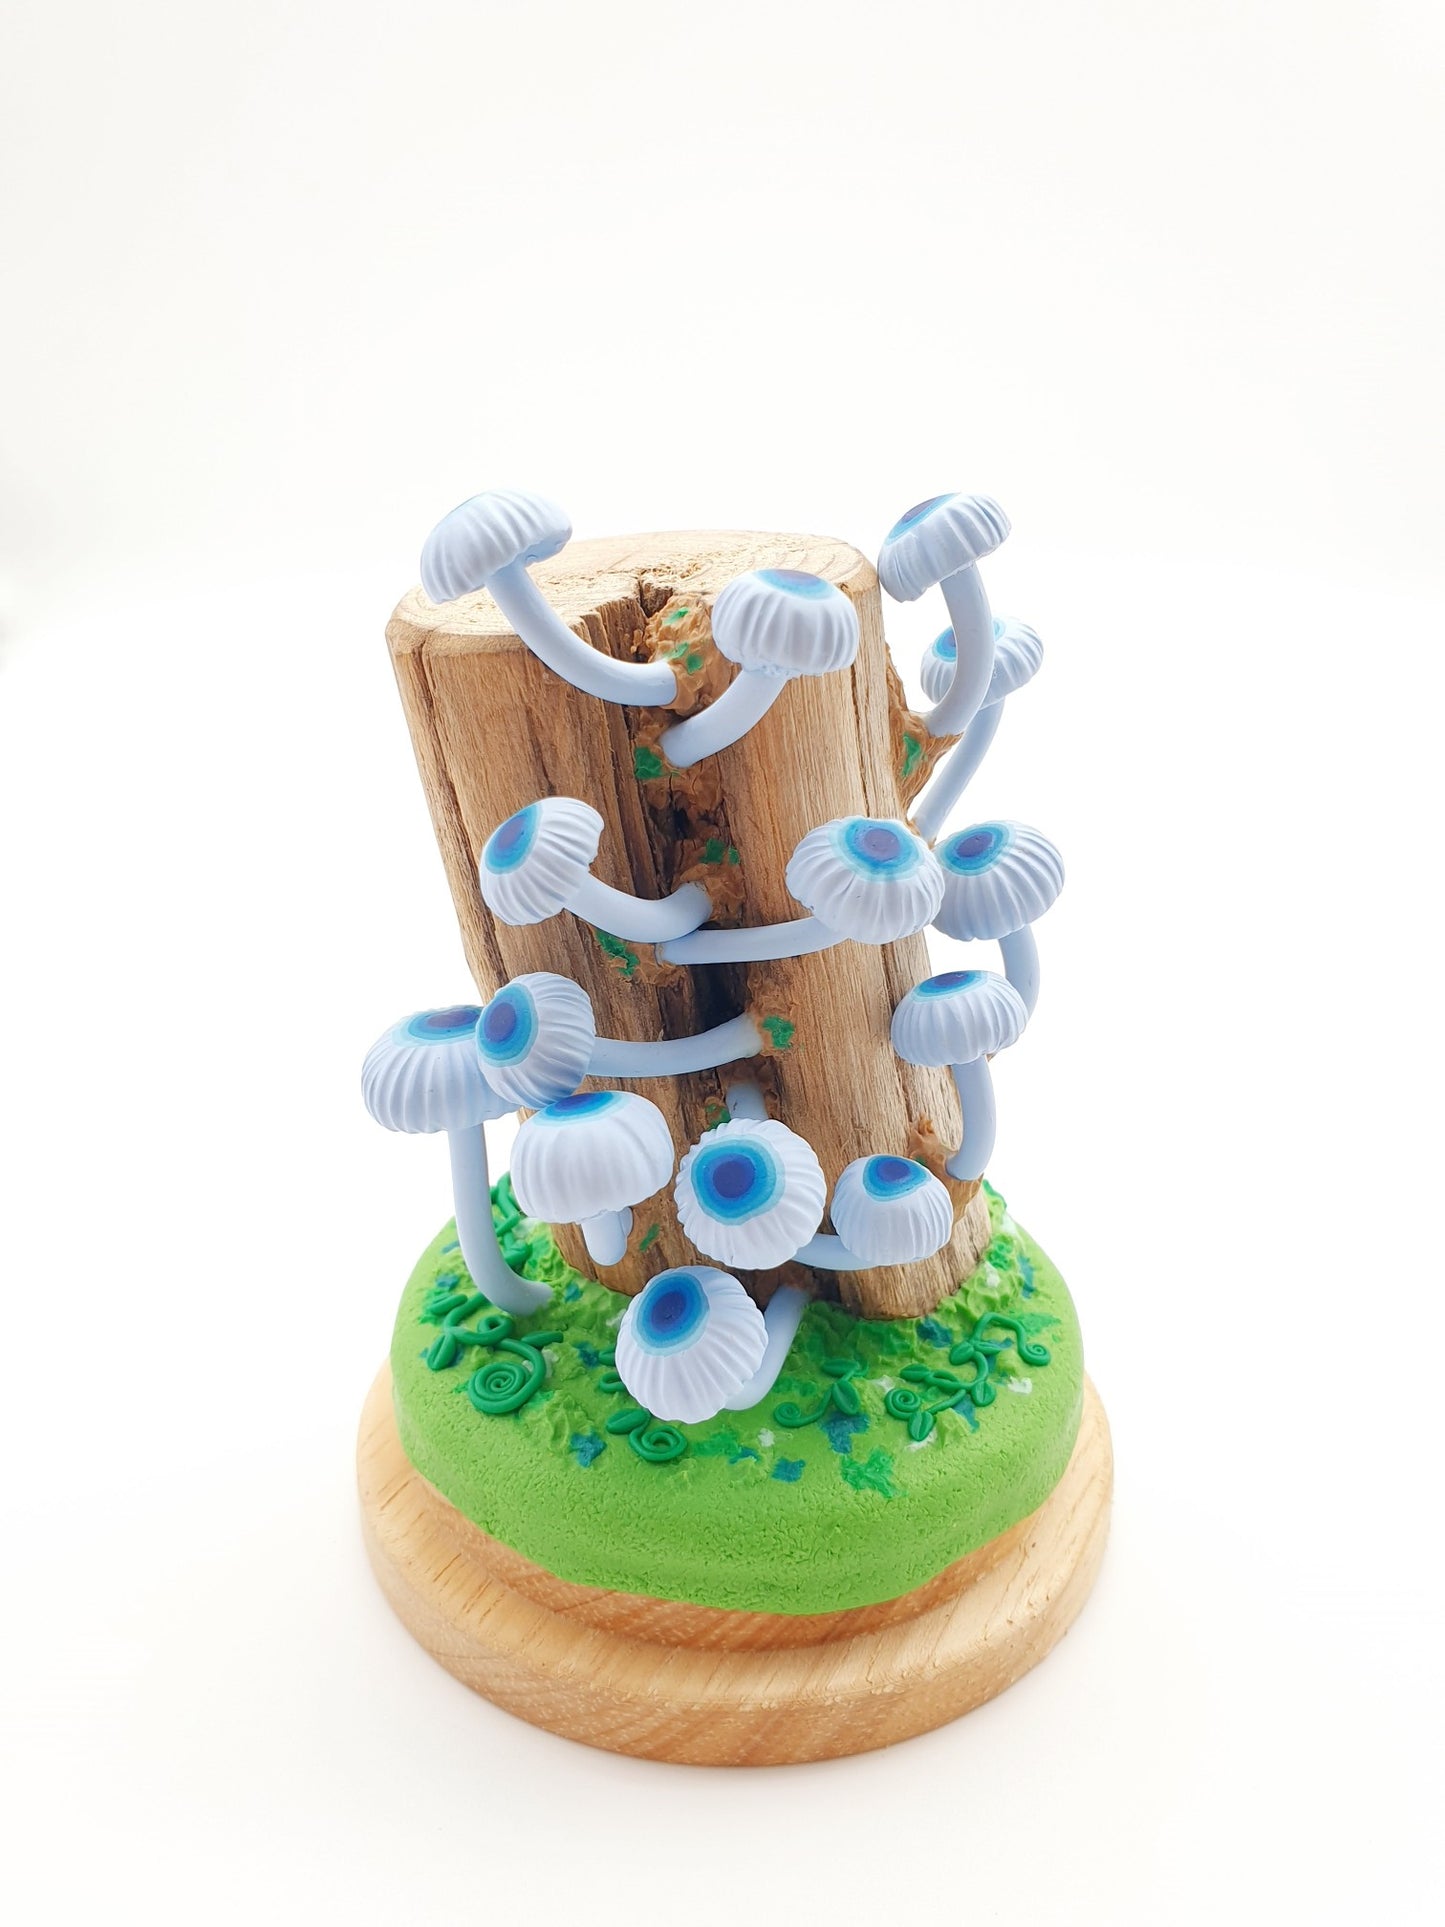 Blue mushrooms Mycena Interrupta on wood sculpture